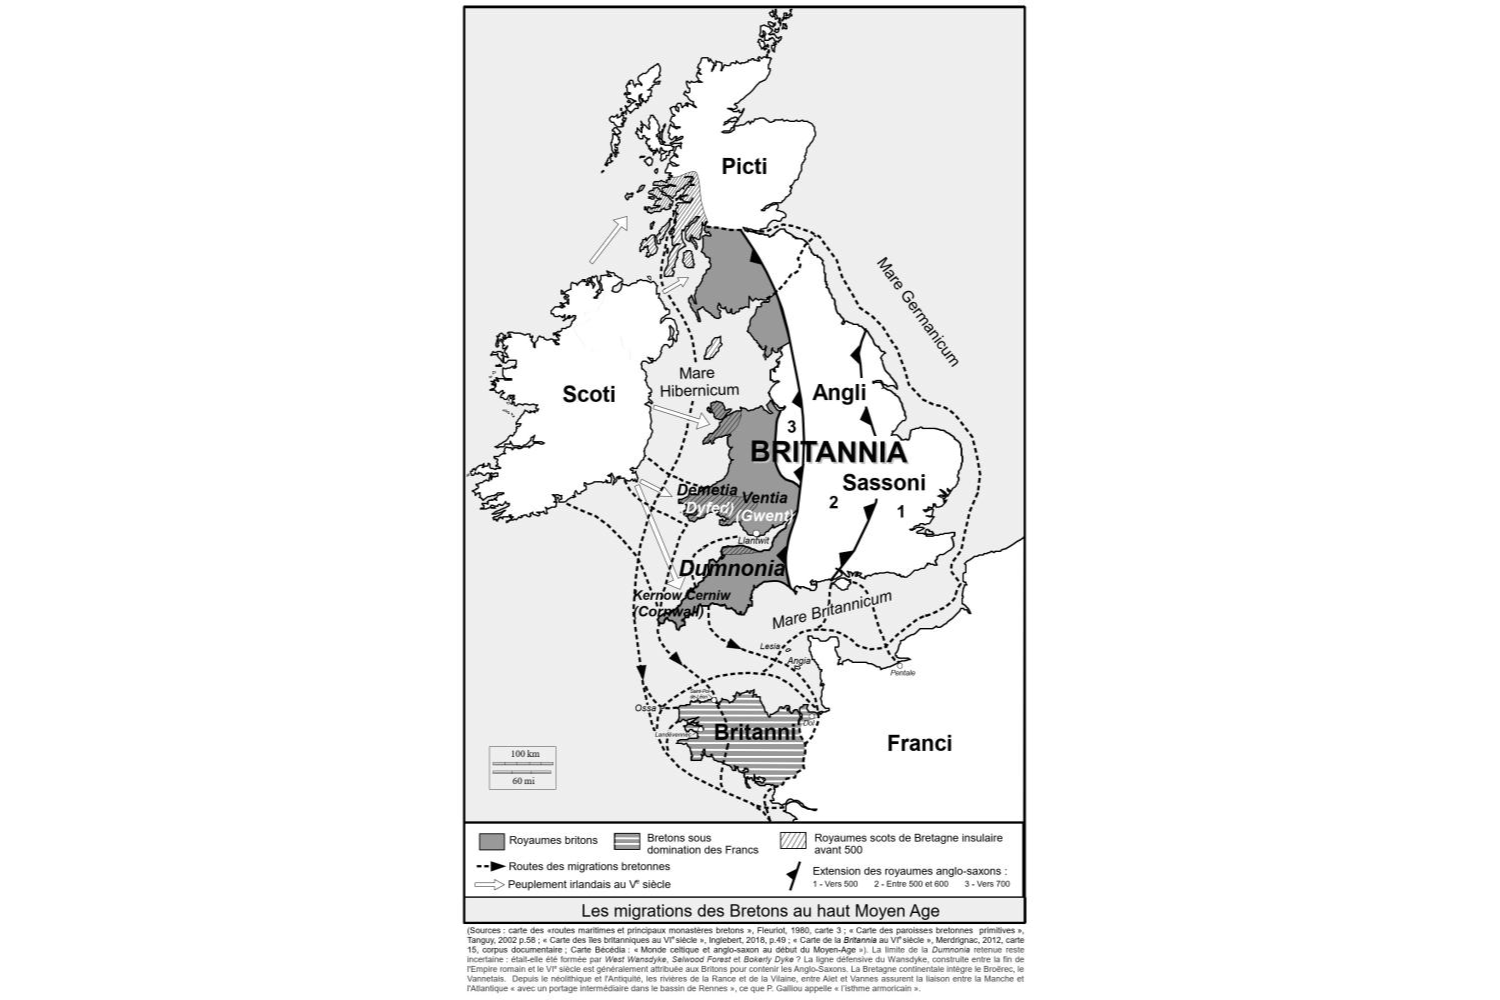 Les migrations des Bretons au haut Moyen Age (cf. sources)